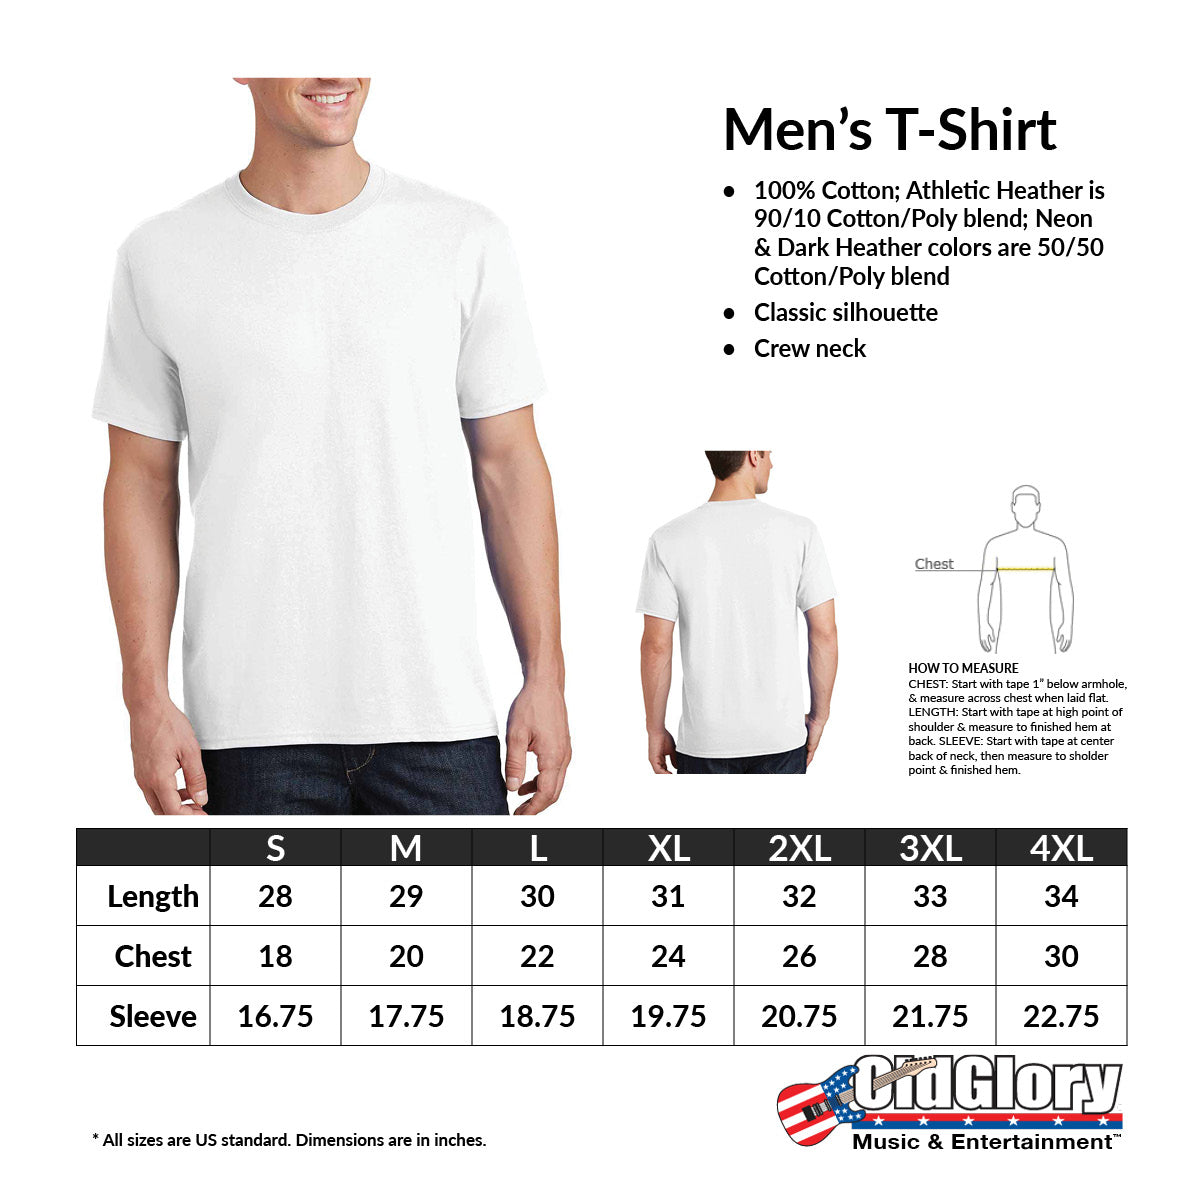 Mlb Houston Astros Women's Short Sleeve V-neck Core T-shirt : Target